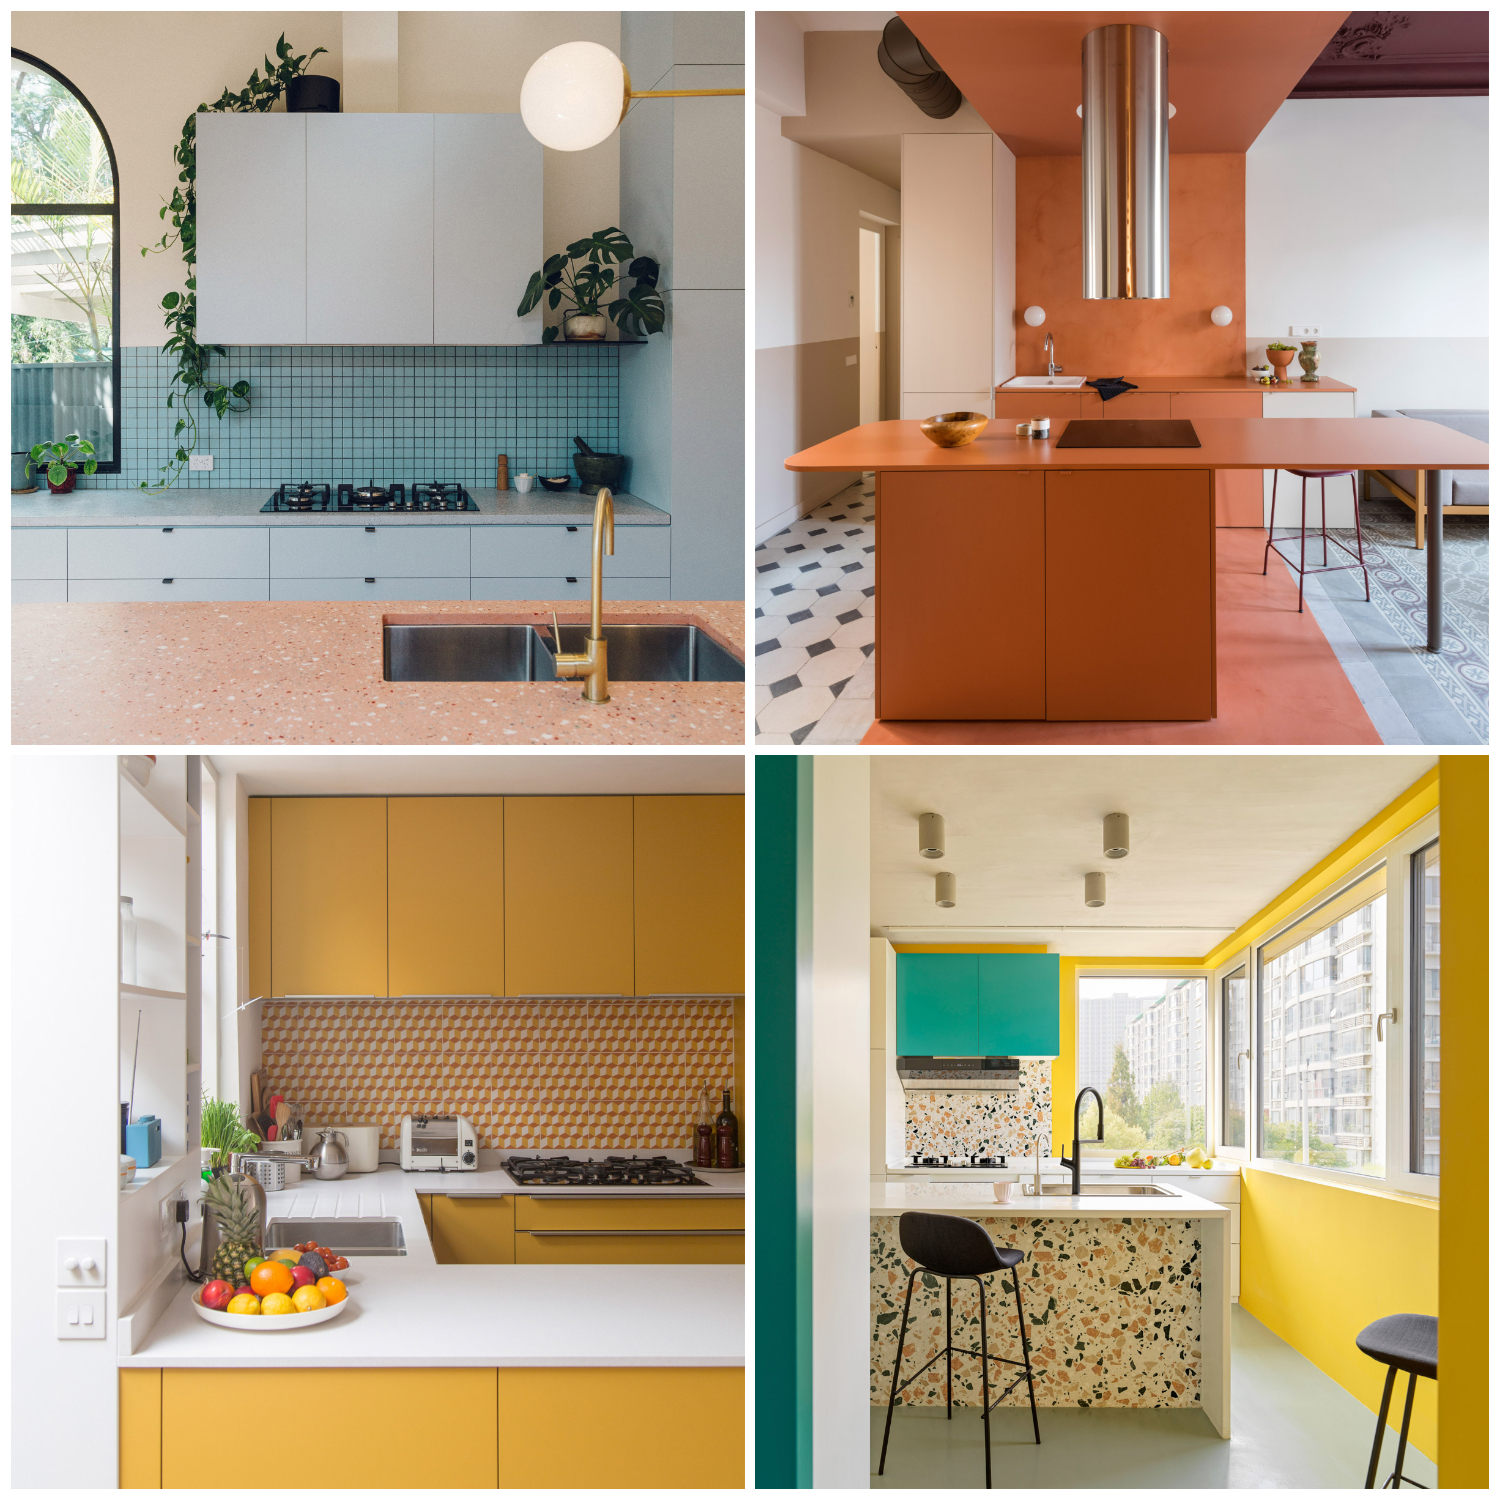 10 thiết kế phòng bếp với bảng màu được phối kết tuyệt đẹp